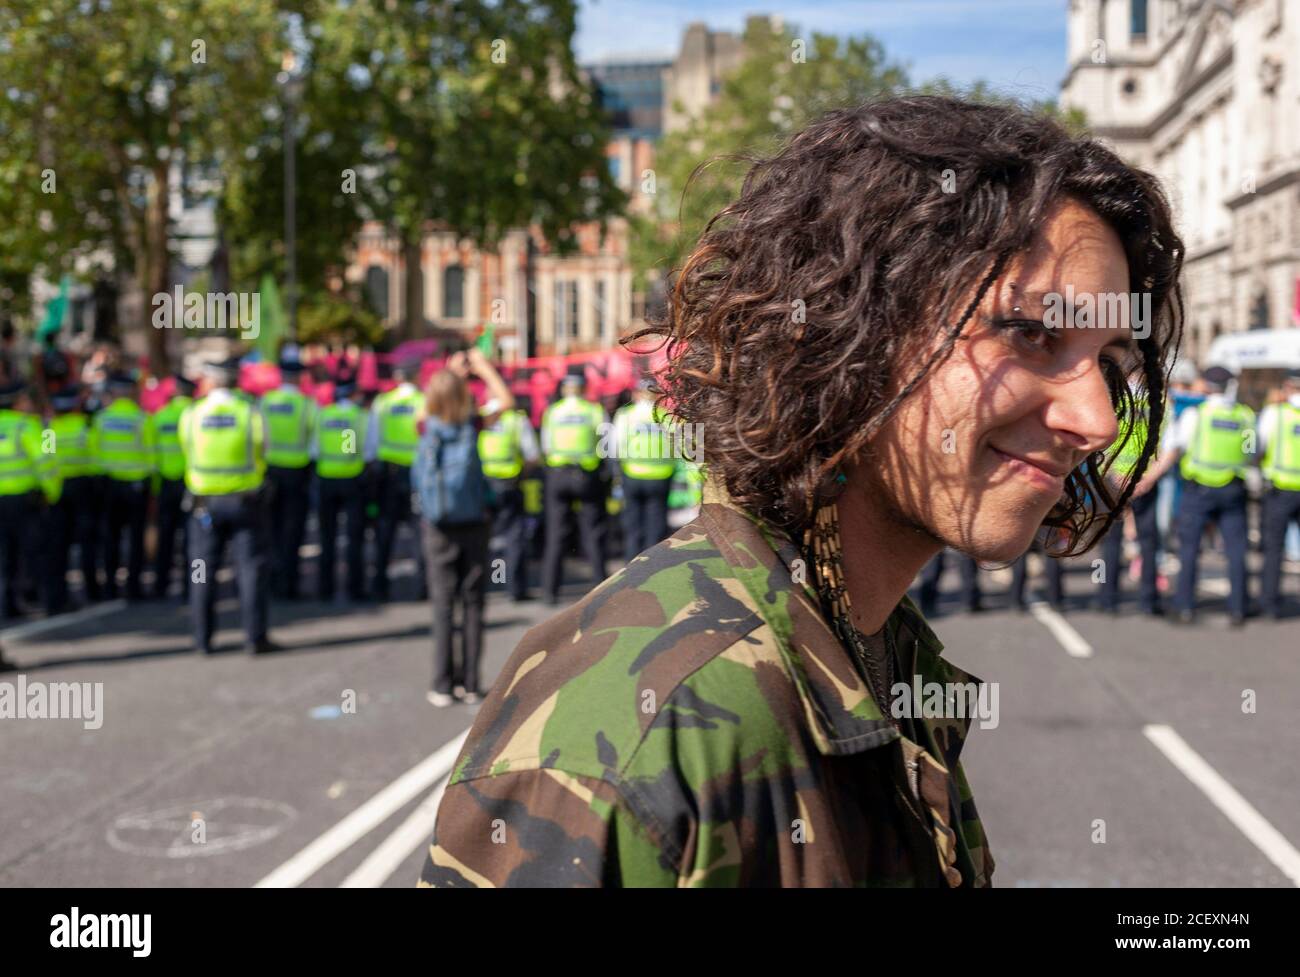 Un jeune manifestant de la rébellion en extinction se promène devant une ligne de police lors des manifestations de 2020 devant le Parlement britannique. Londres. Banque D'Images